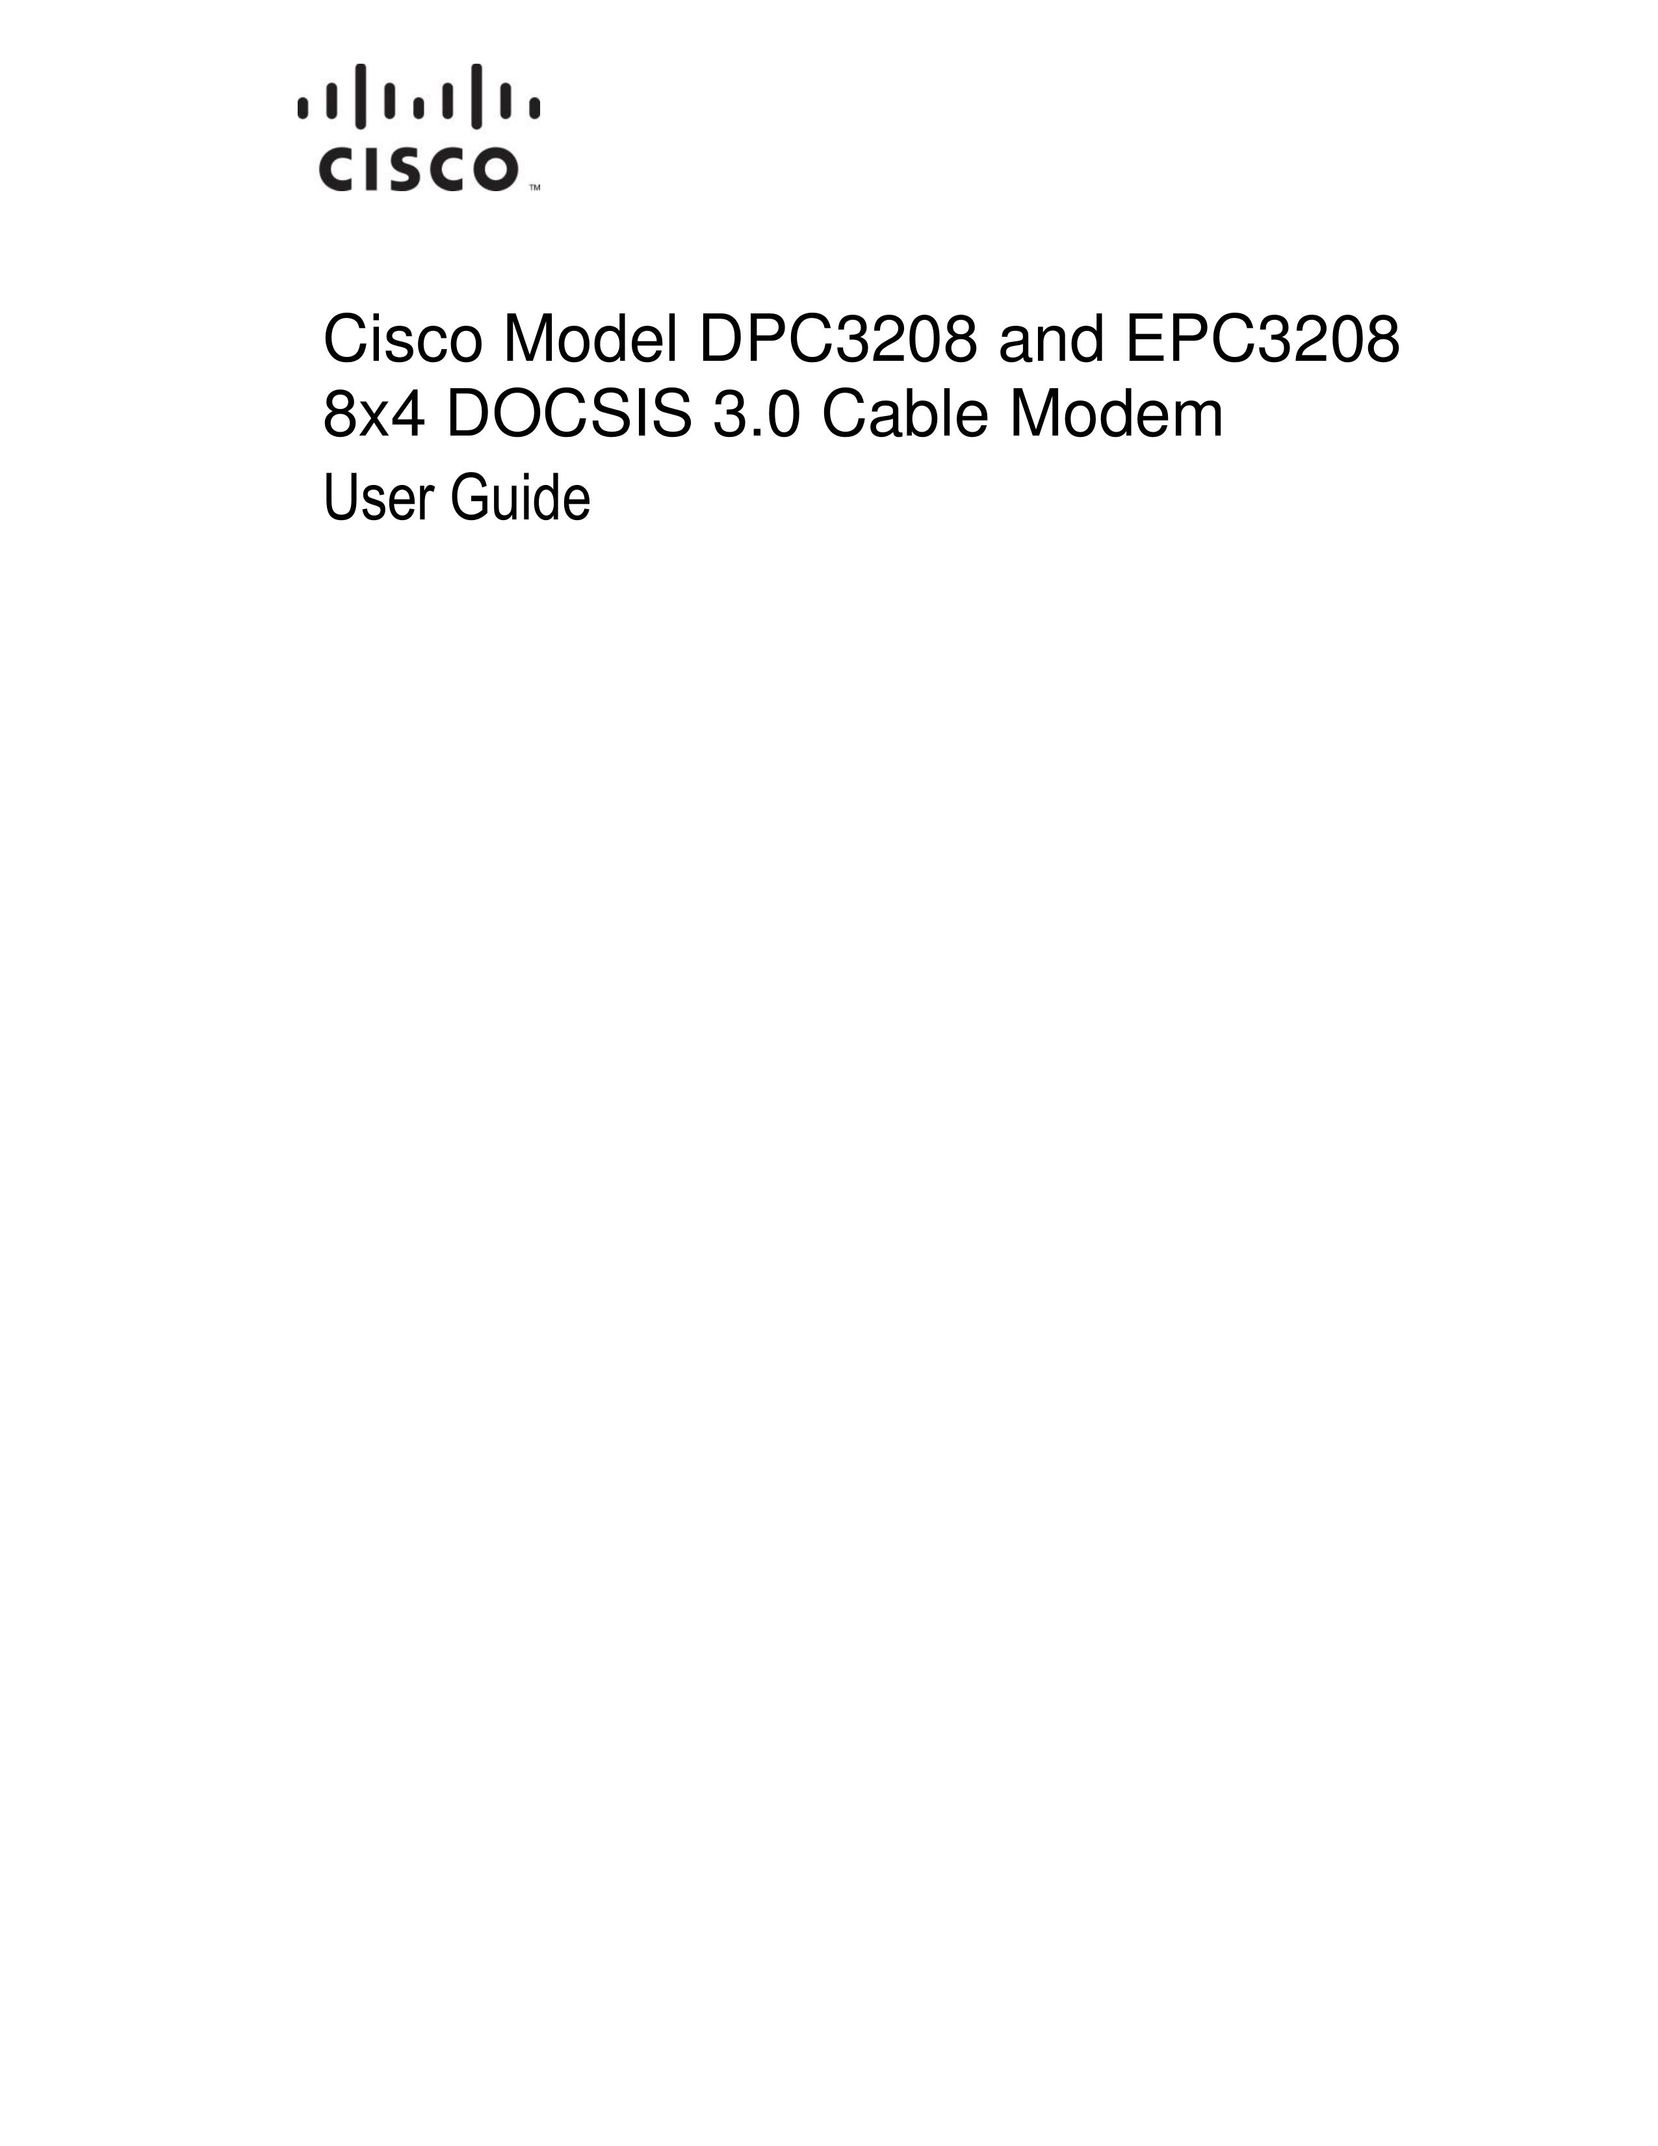 Cisco Systems DPC3208 Modem User Manual